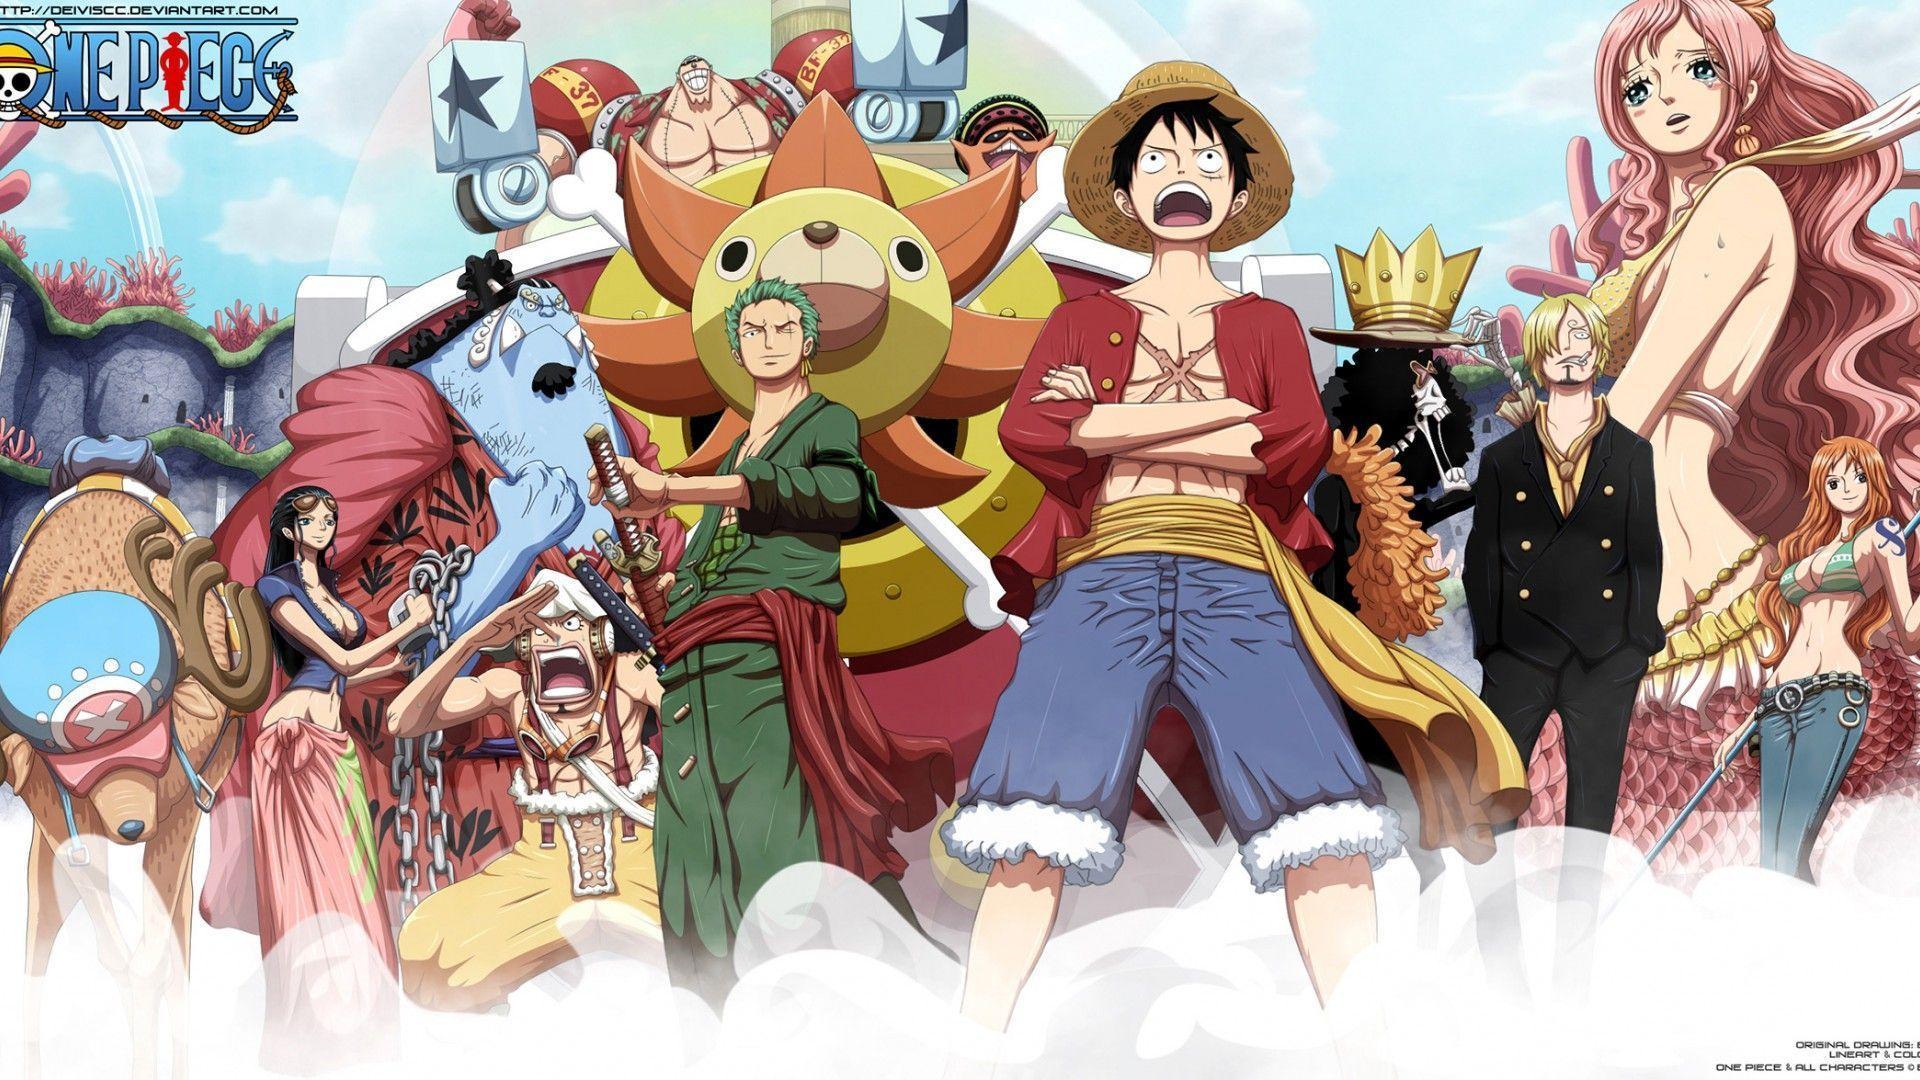 Hình nền One Piece làm bạn thực sự háo hức để khám phá thế giới tuyệt đẹp và nhiều màu sắc của chúng ta. Những chiếc hình nền này không chỉ đem đến vẻ đẹp tuyệt vời của anime, mà còn cung cấp cho bạn một khẩu phần đầy đủ về nội dung và nhân vật ưa thích của bạn.